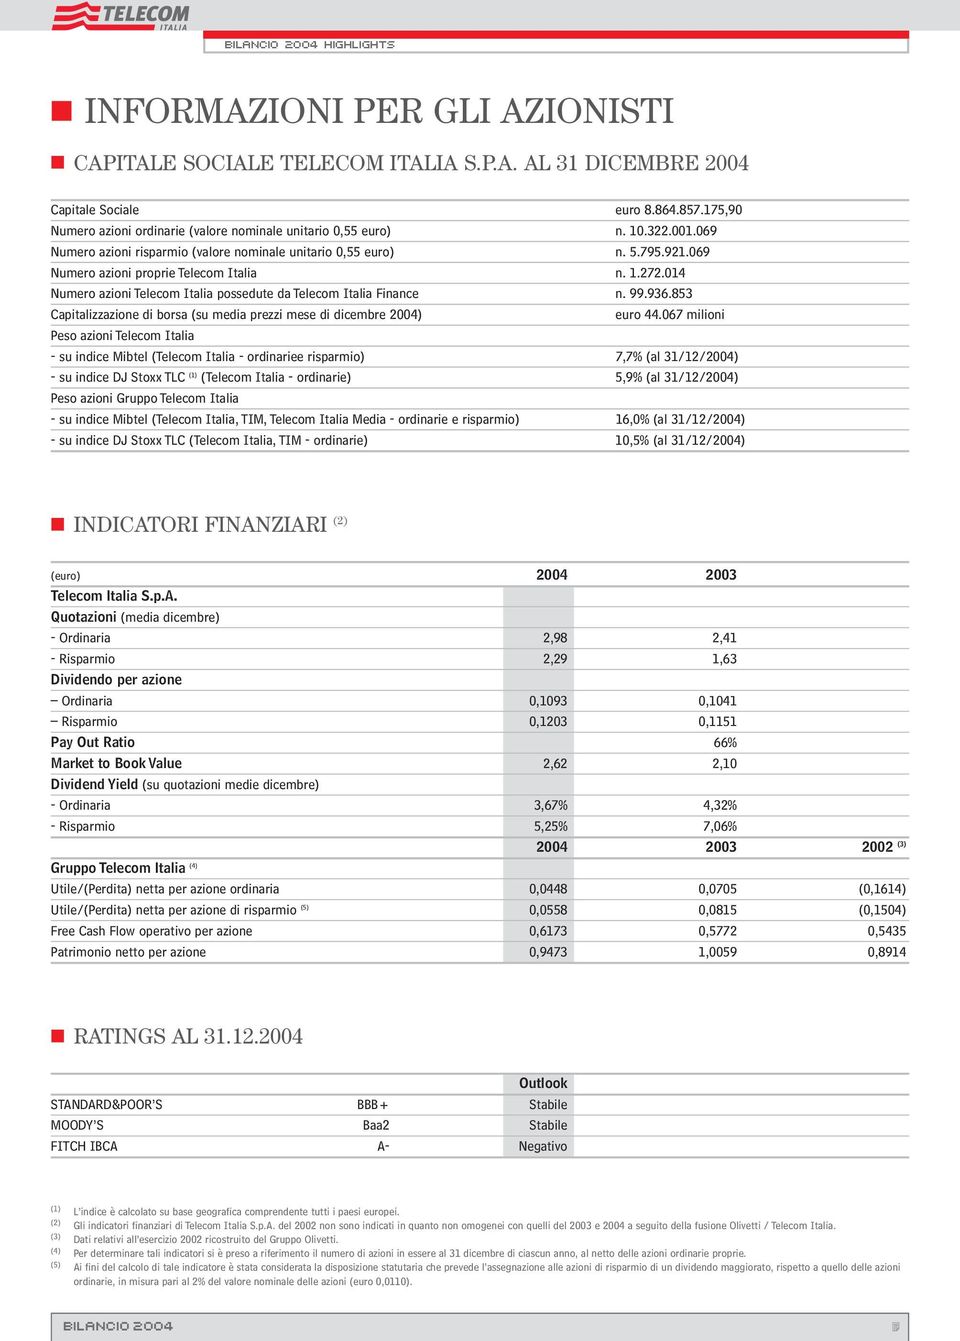 14 Numero azioni Telecom Italia possedute da Telecom Italia Finance n. 99.936.853 Capitalizzazione di borsa (su media prezzi mese di dicembre 24) euro 44.